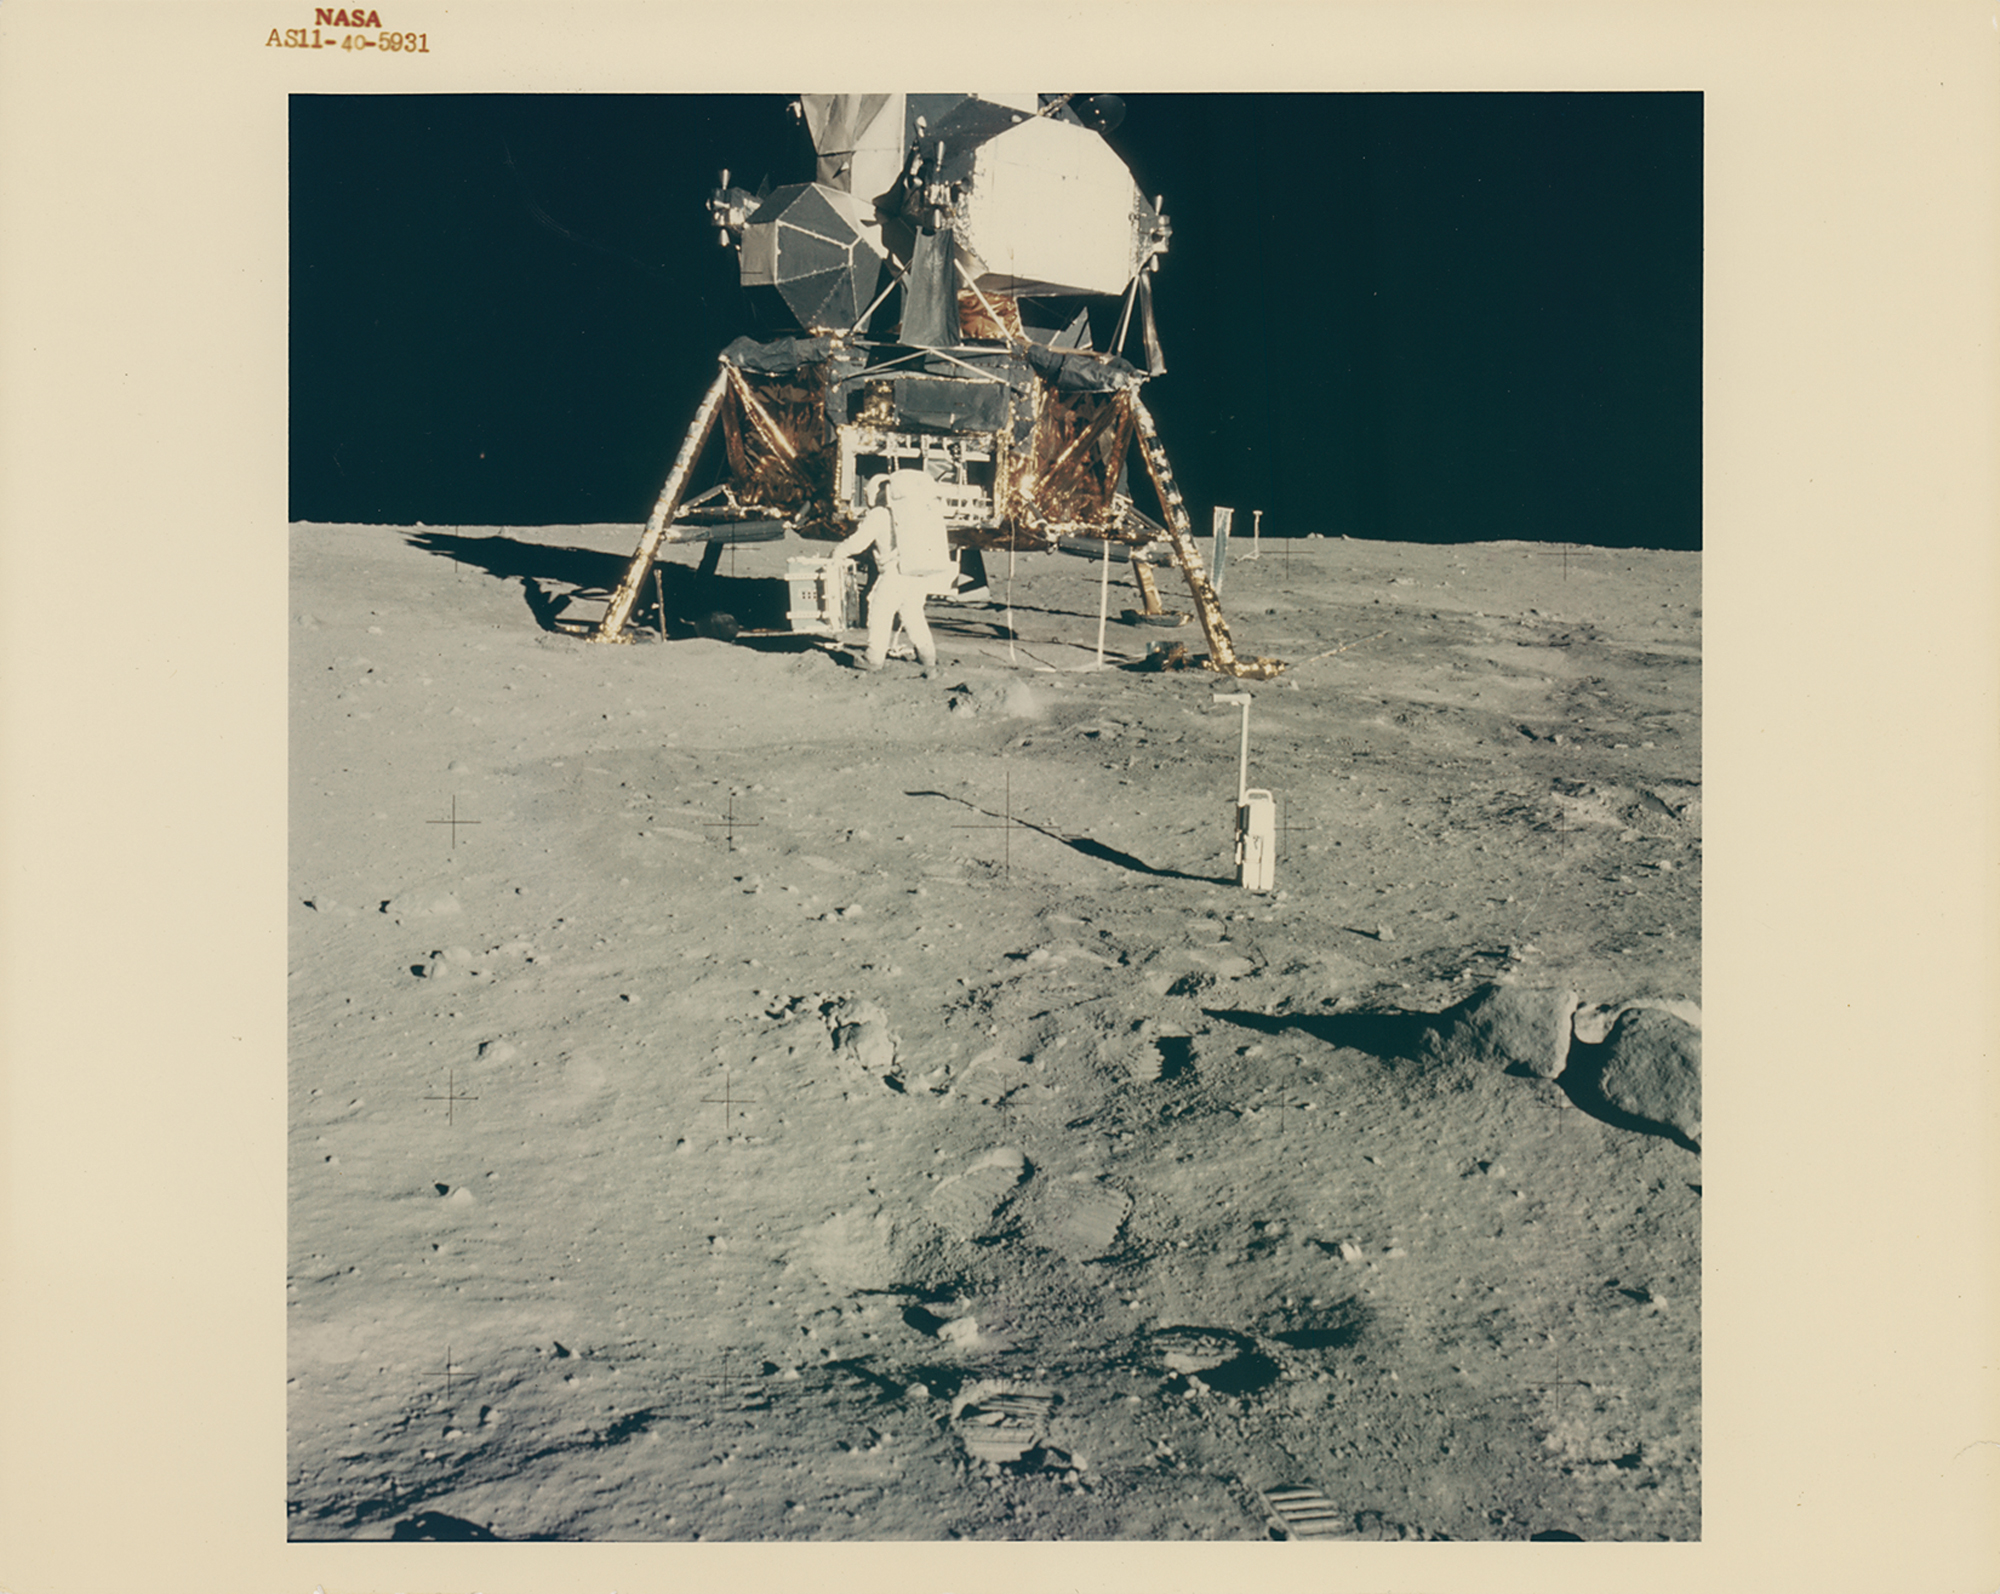 Lot #383 Apollo 11 Original Vintage NASA Photograph